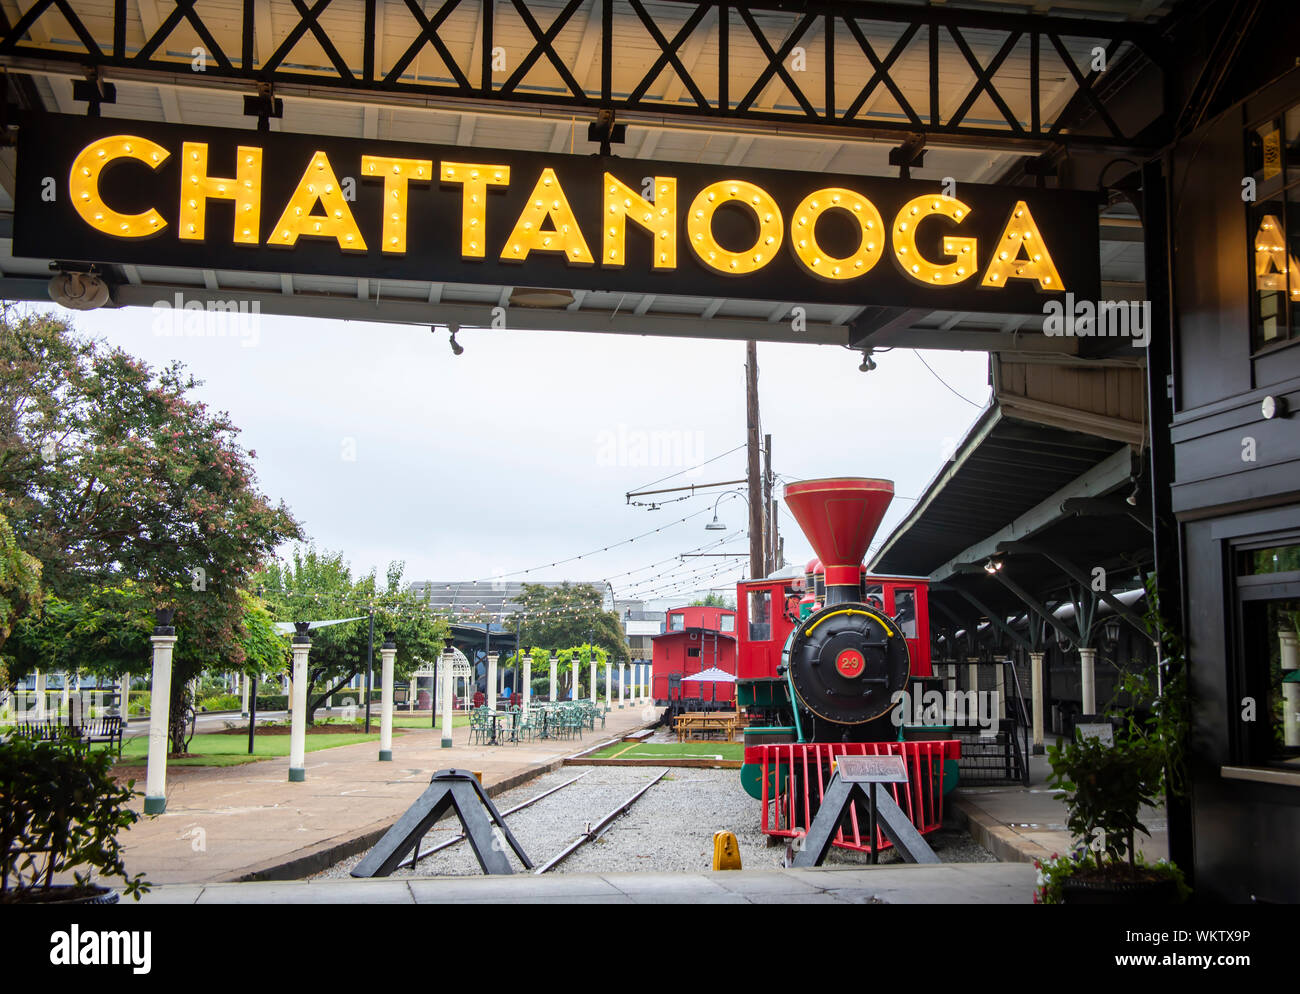 Chattanooga, TN, USA - 27. August 2019: Zeichen für Chattanooga im Chattanooga Choo Choo Hotel in der Sehenswürdigkeit Bahnhof mit dem roten locomoti Stockfoto